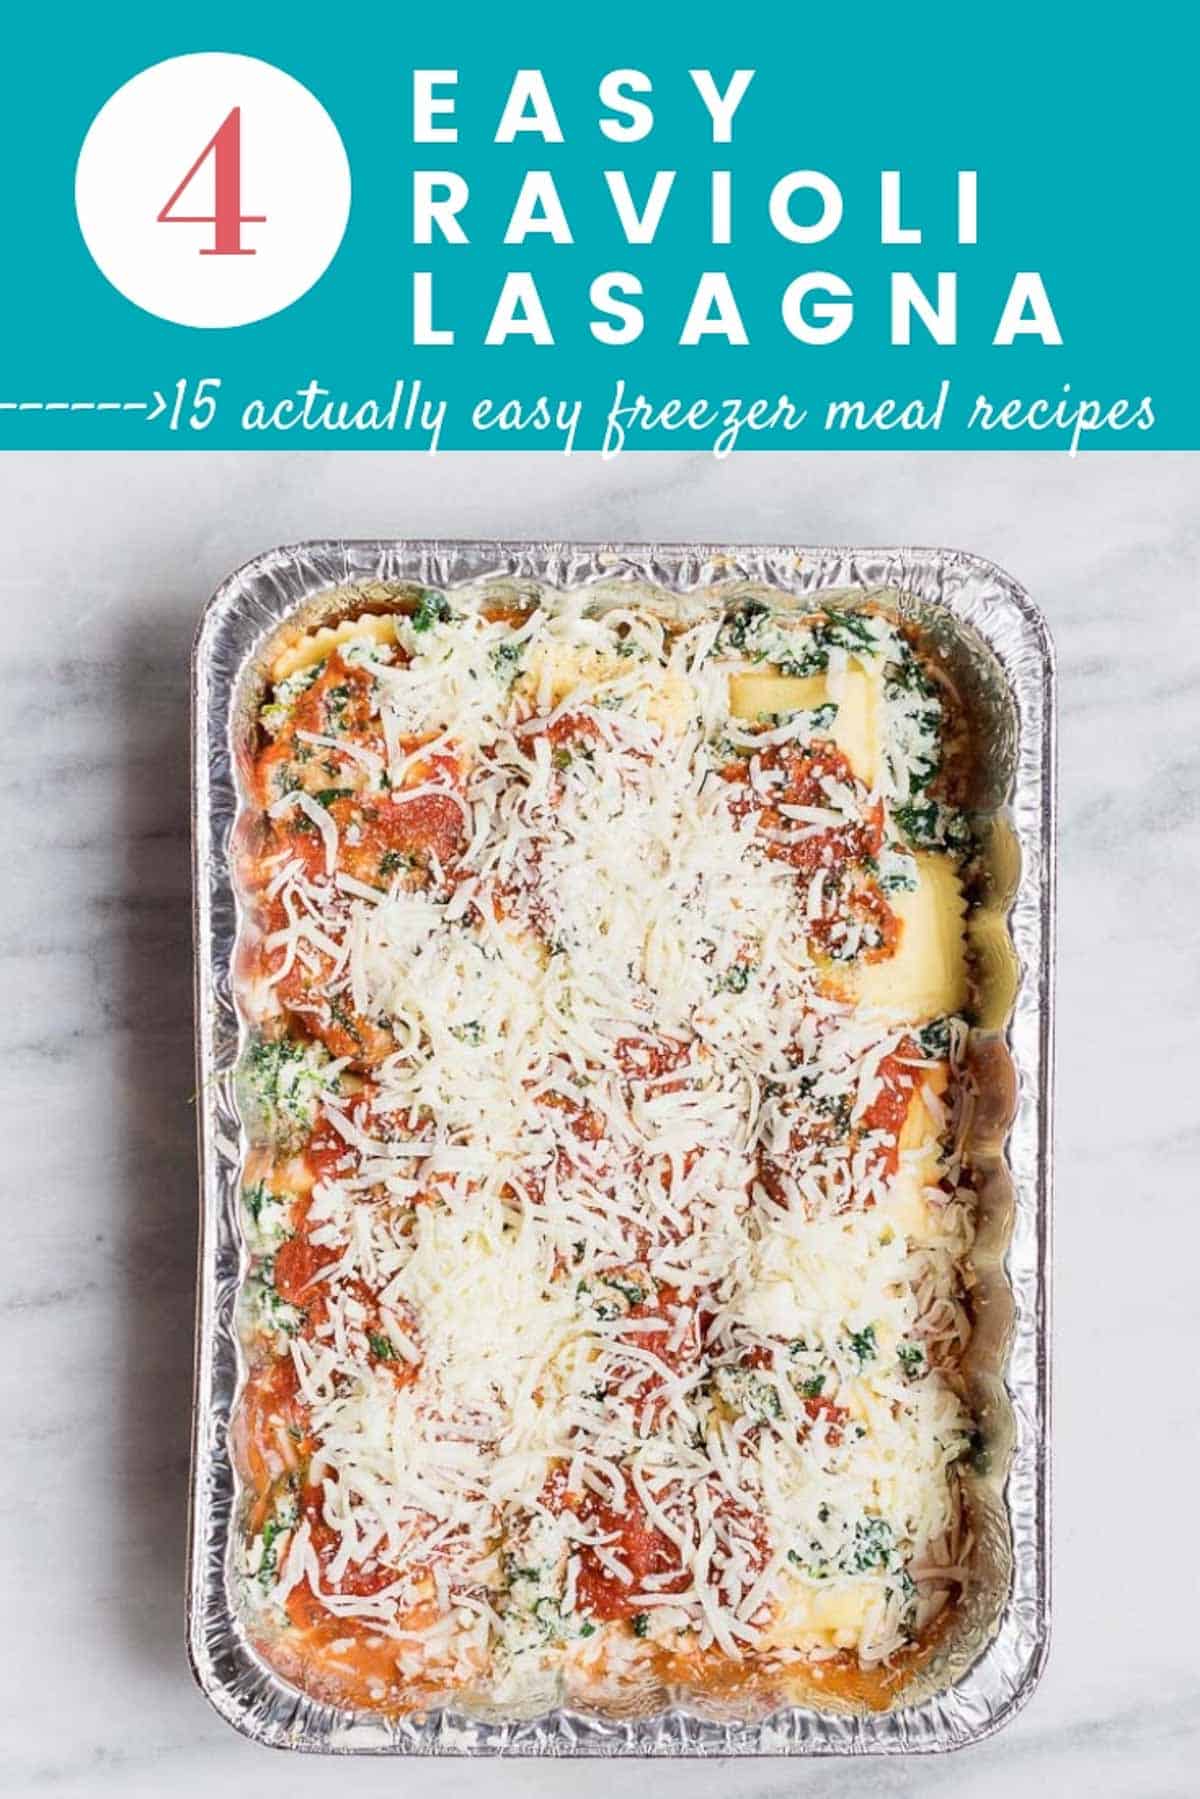 Easy healthy freezer meals: Easy Ravioli Lasagna